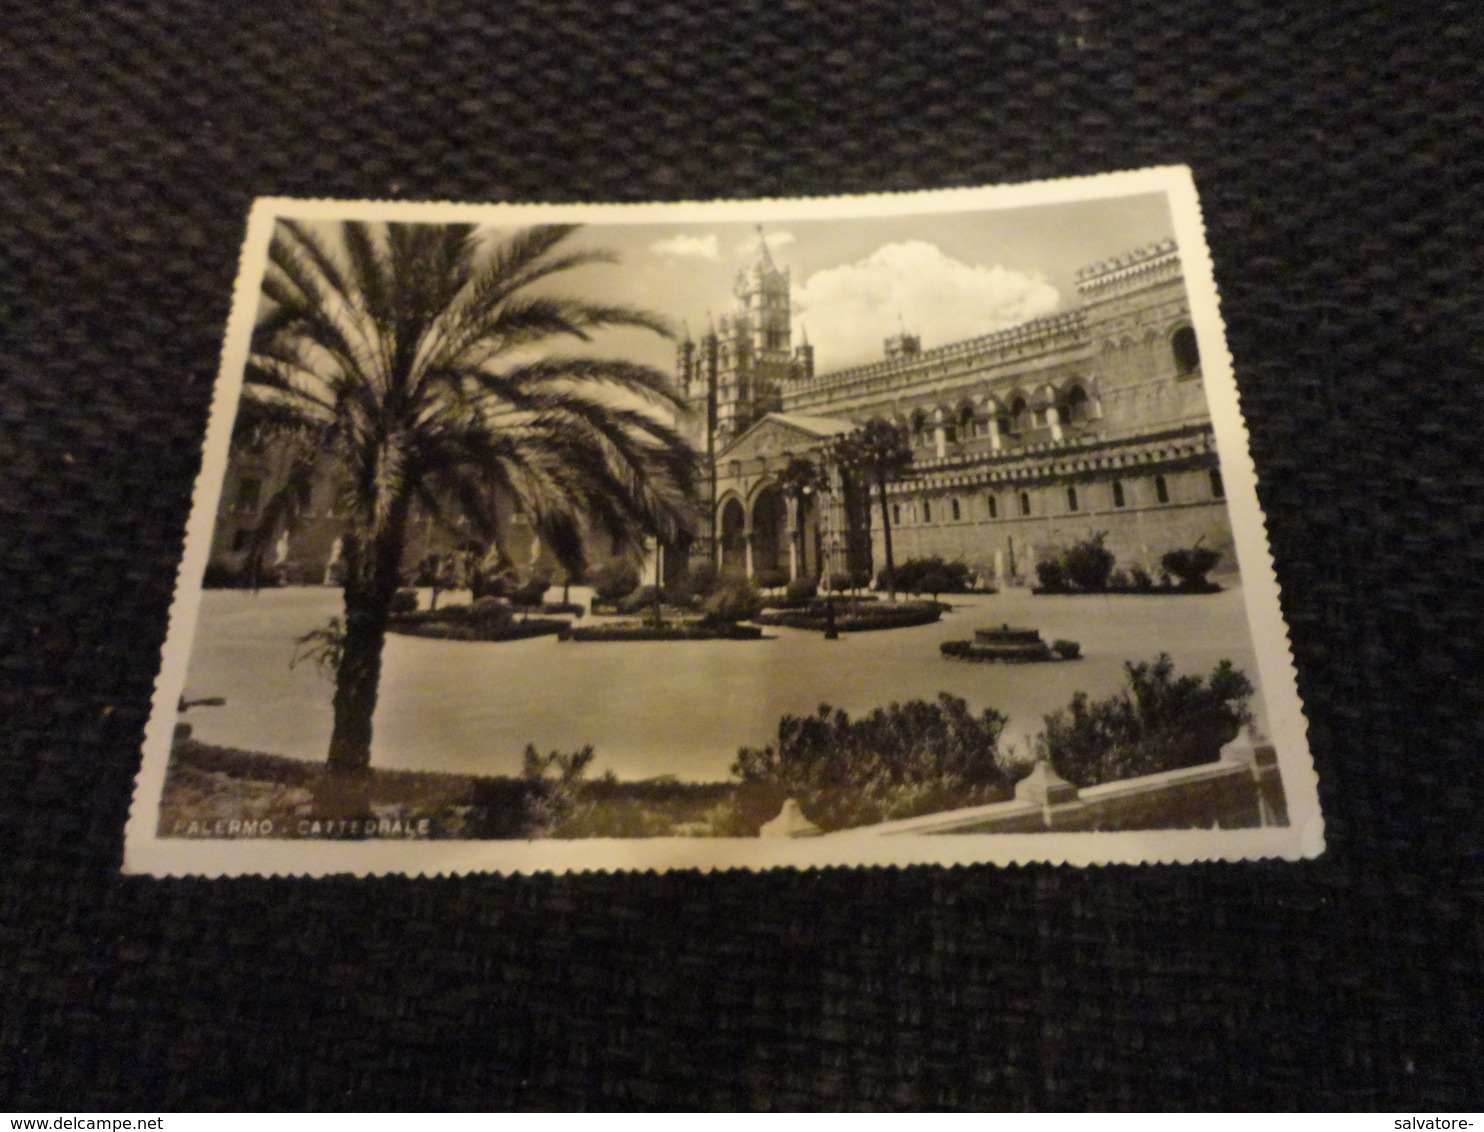 CARTOLINA PALERMO-LA CATTEDRALE-VIAGG.1956 CON ANNULLO PUBBLICITARIO 1° MOSTRA DELLA MECC.POSTALE - Palermo